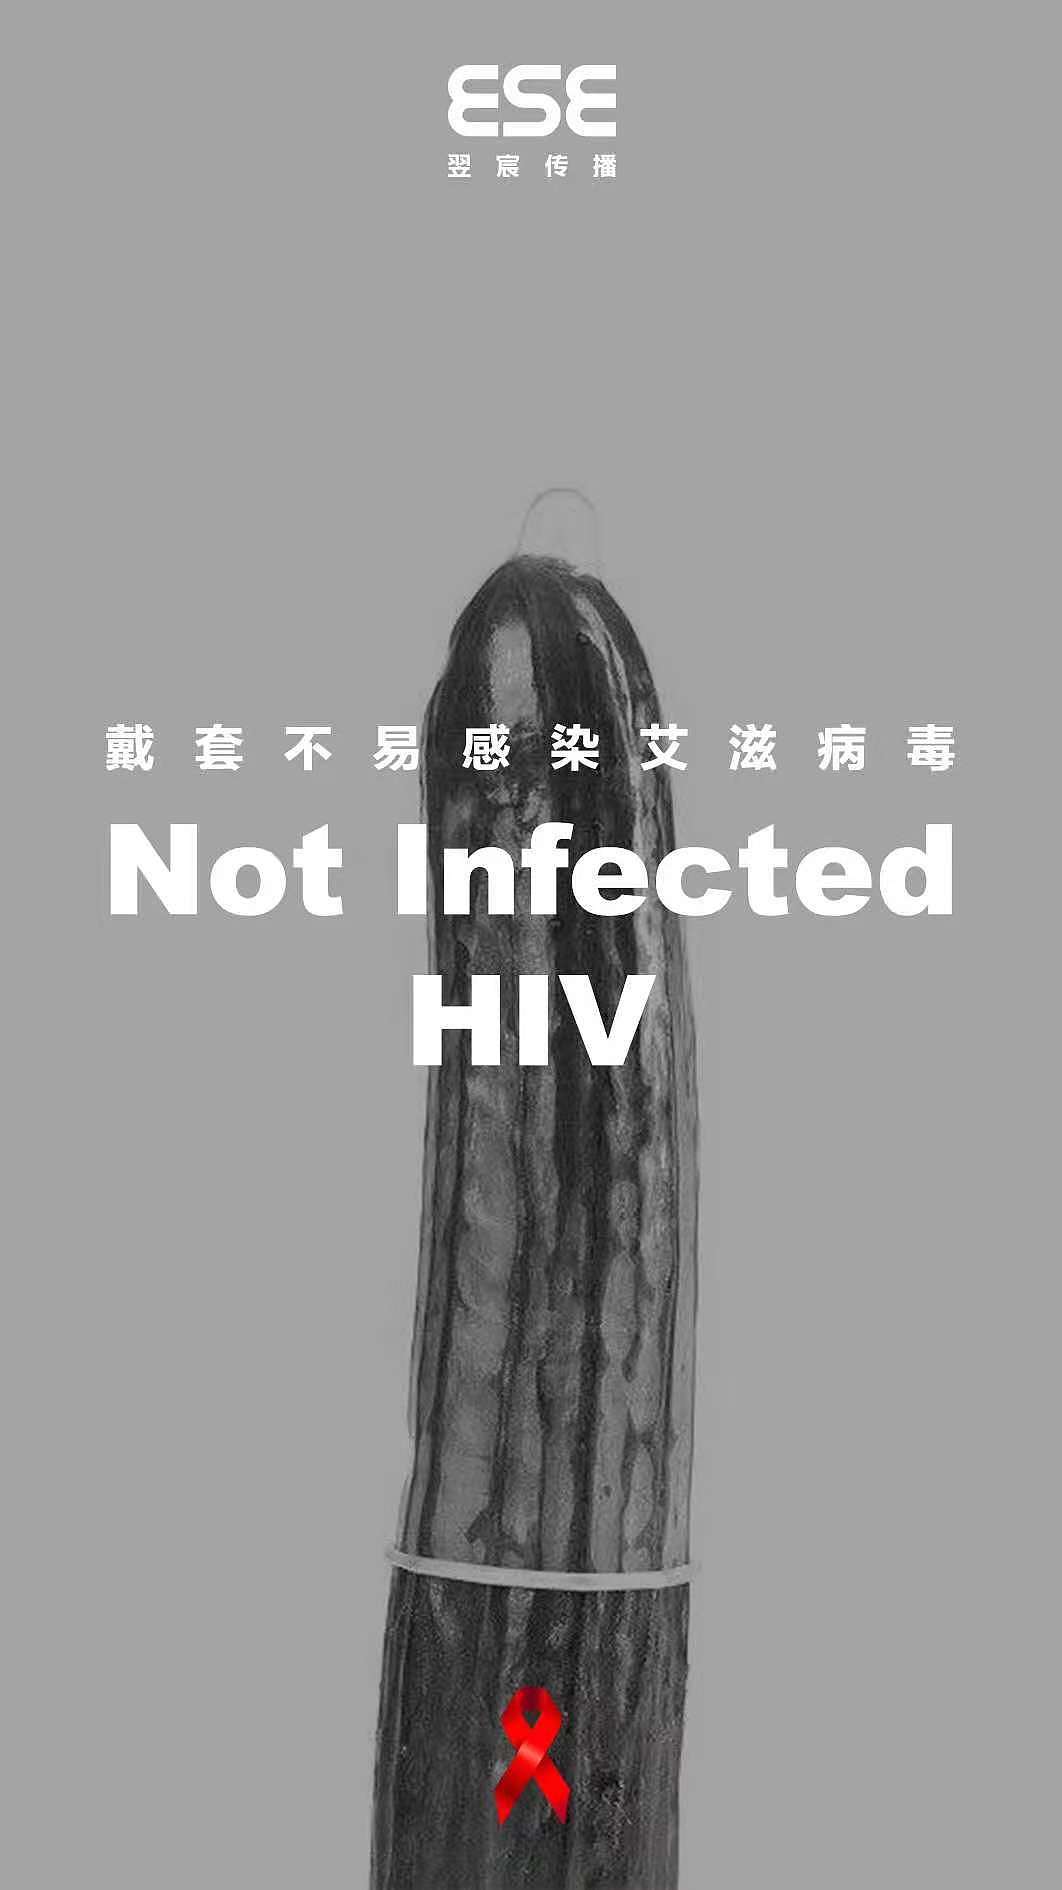 12月1日世界艾滋病日海报+宣传语素材|干货收藏~ - 知乎